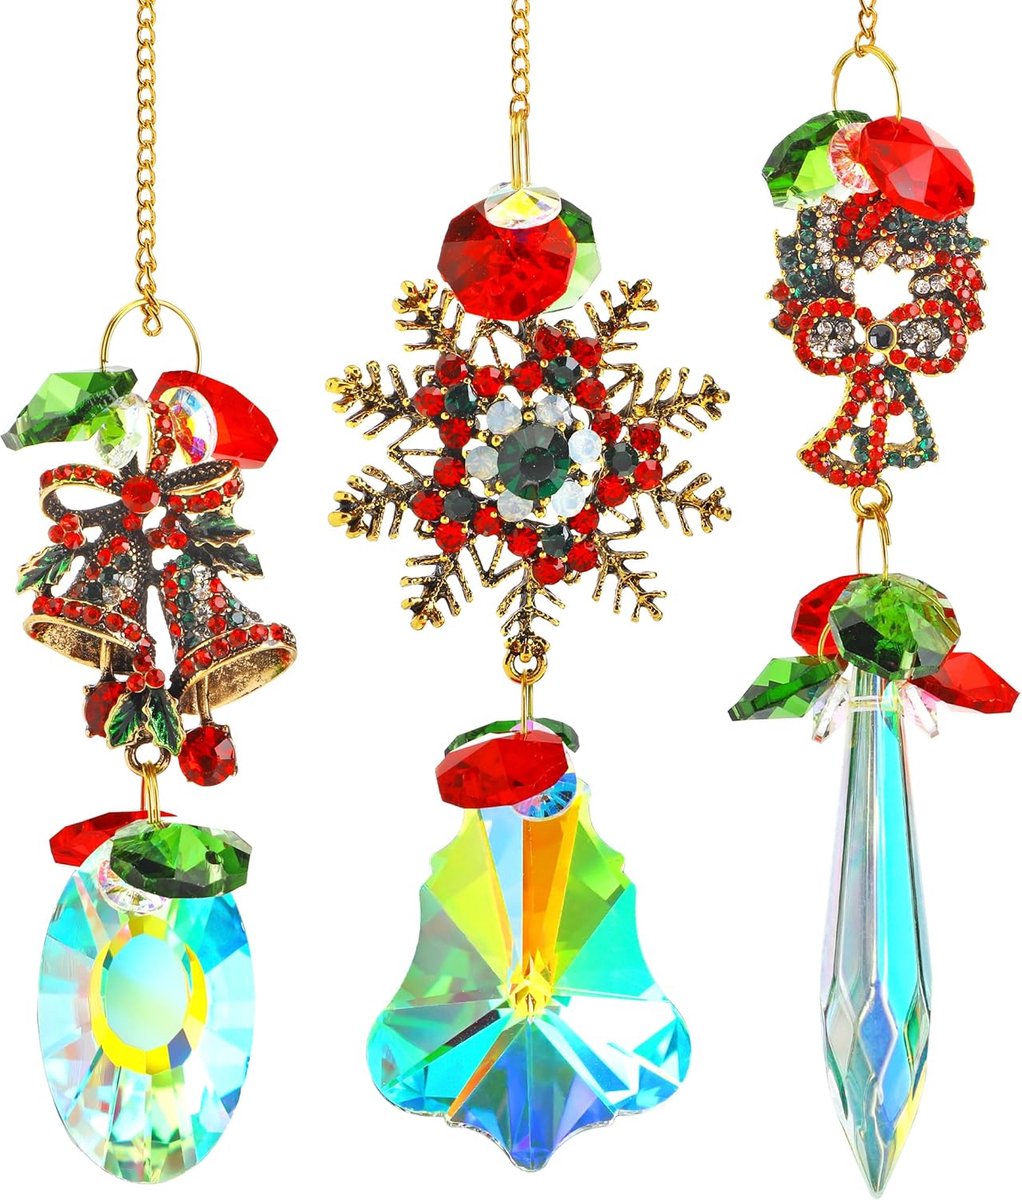 3 Stuks Kristal Kerst Hangers - Kristal - Kerstdecoratie - Raamhangers - Kersthangers - Boomversiering - Venster - Regenboog Kleuren - Zonnevanger - Suncatcher - Crystal